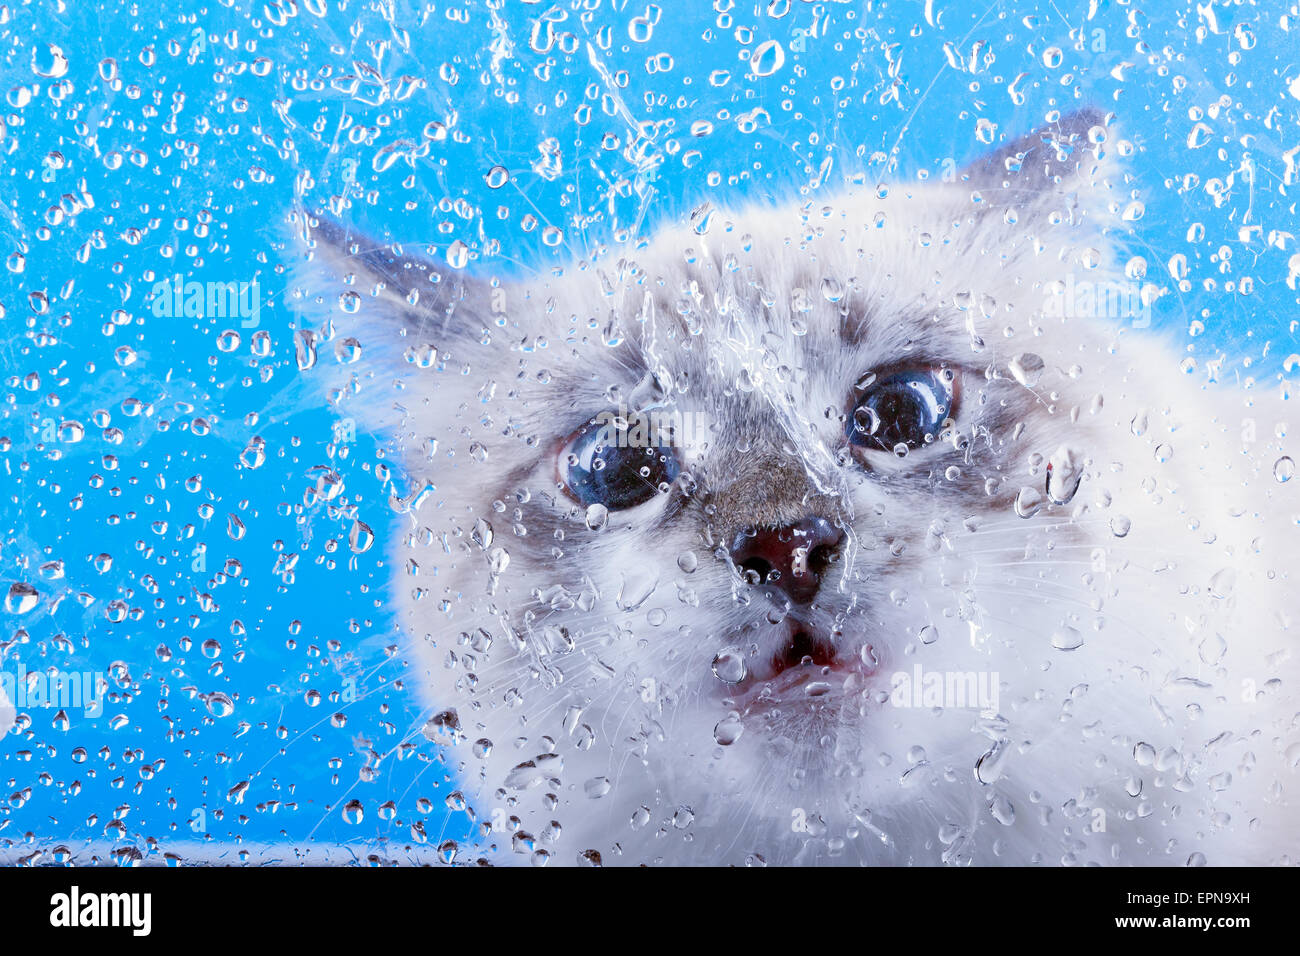 überrascht Katze Schnauze, die durch das Glas bedeckt mit sieht Tropfen Wasser Stockfoto